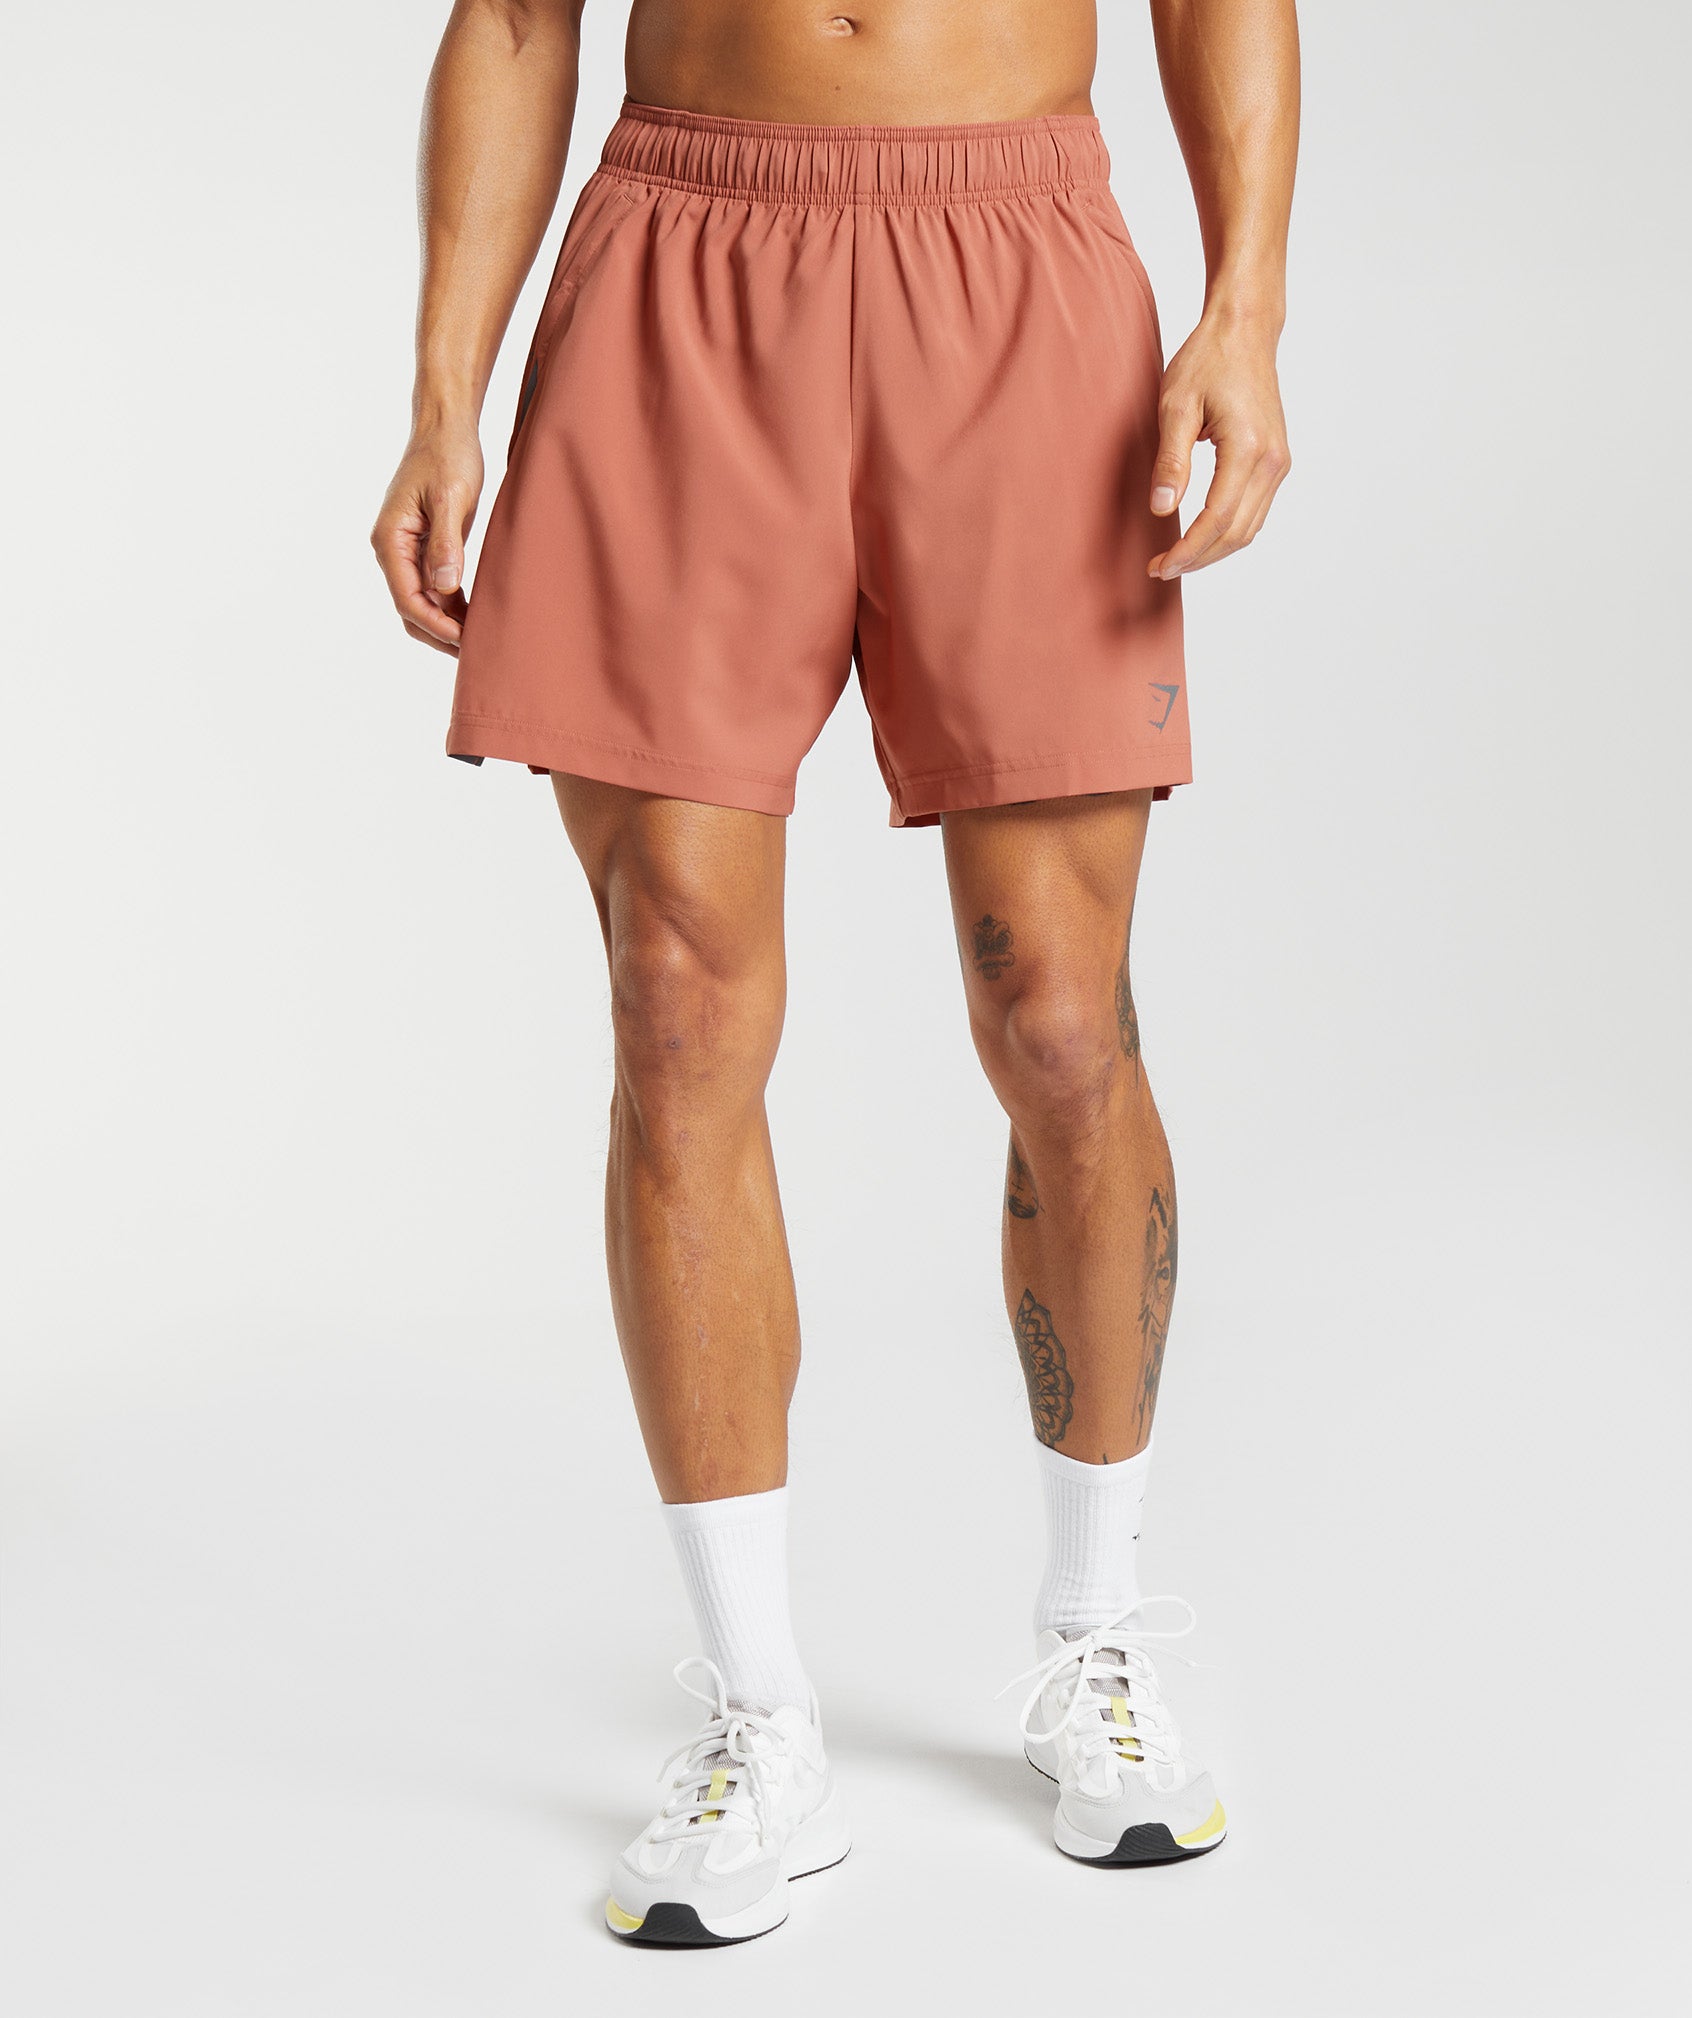 Gymshark Pink Athletic Shorts for Men